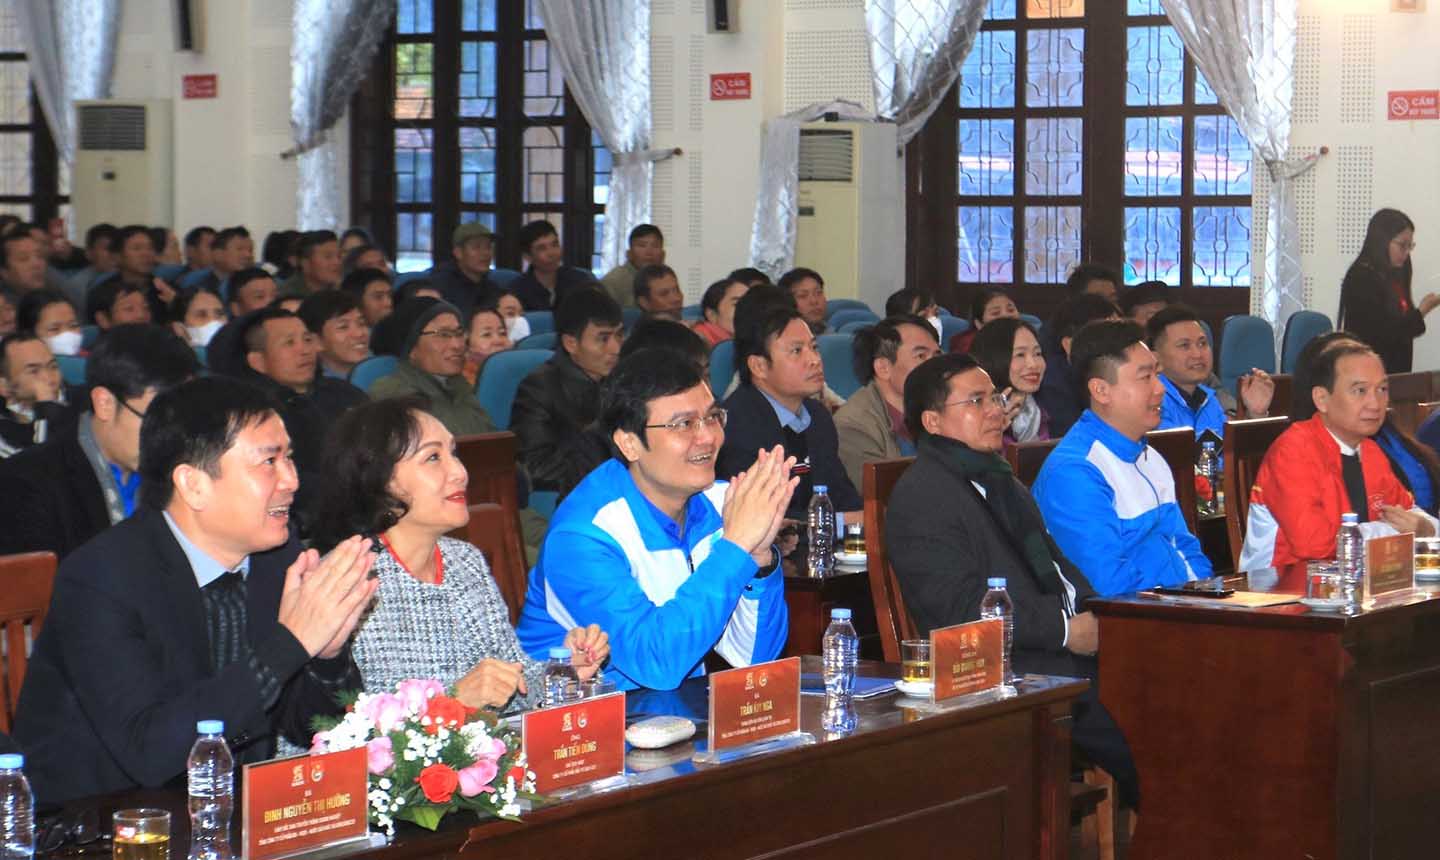 Tham dự chương trình có ông Bùi Quang Huy, Ủy viên dự khuyết Ban chấp hành Trung ương Đảng, Bí thư thứ nhất Trung ương Đoàn, lãnh đạo Tỉnh ủy, Tỉnh đoàn Nghệ An và đại diện lãnh đạo Sabeco.